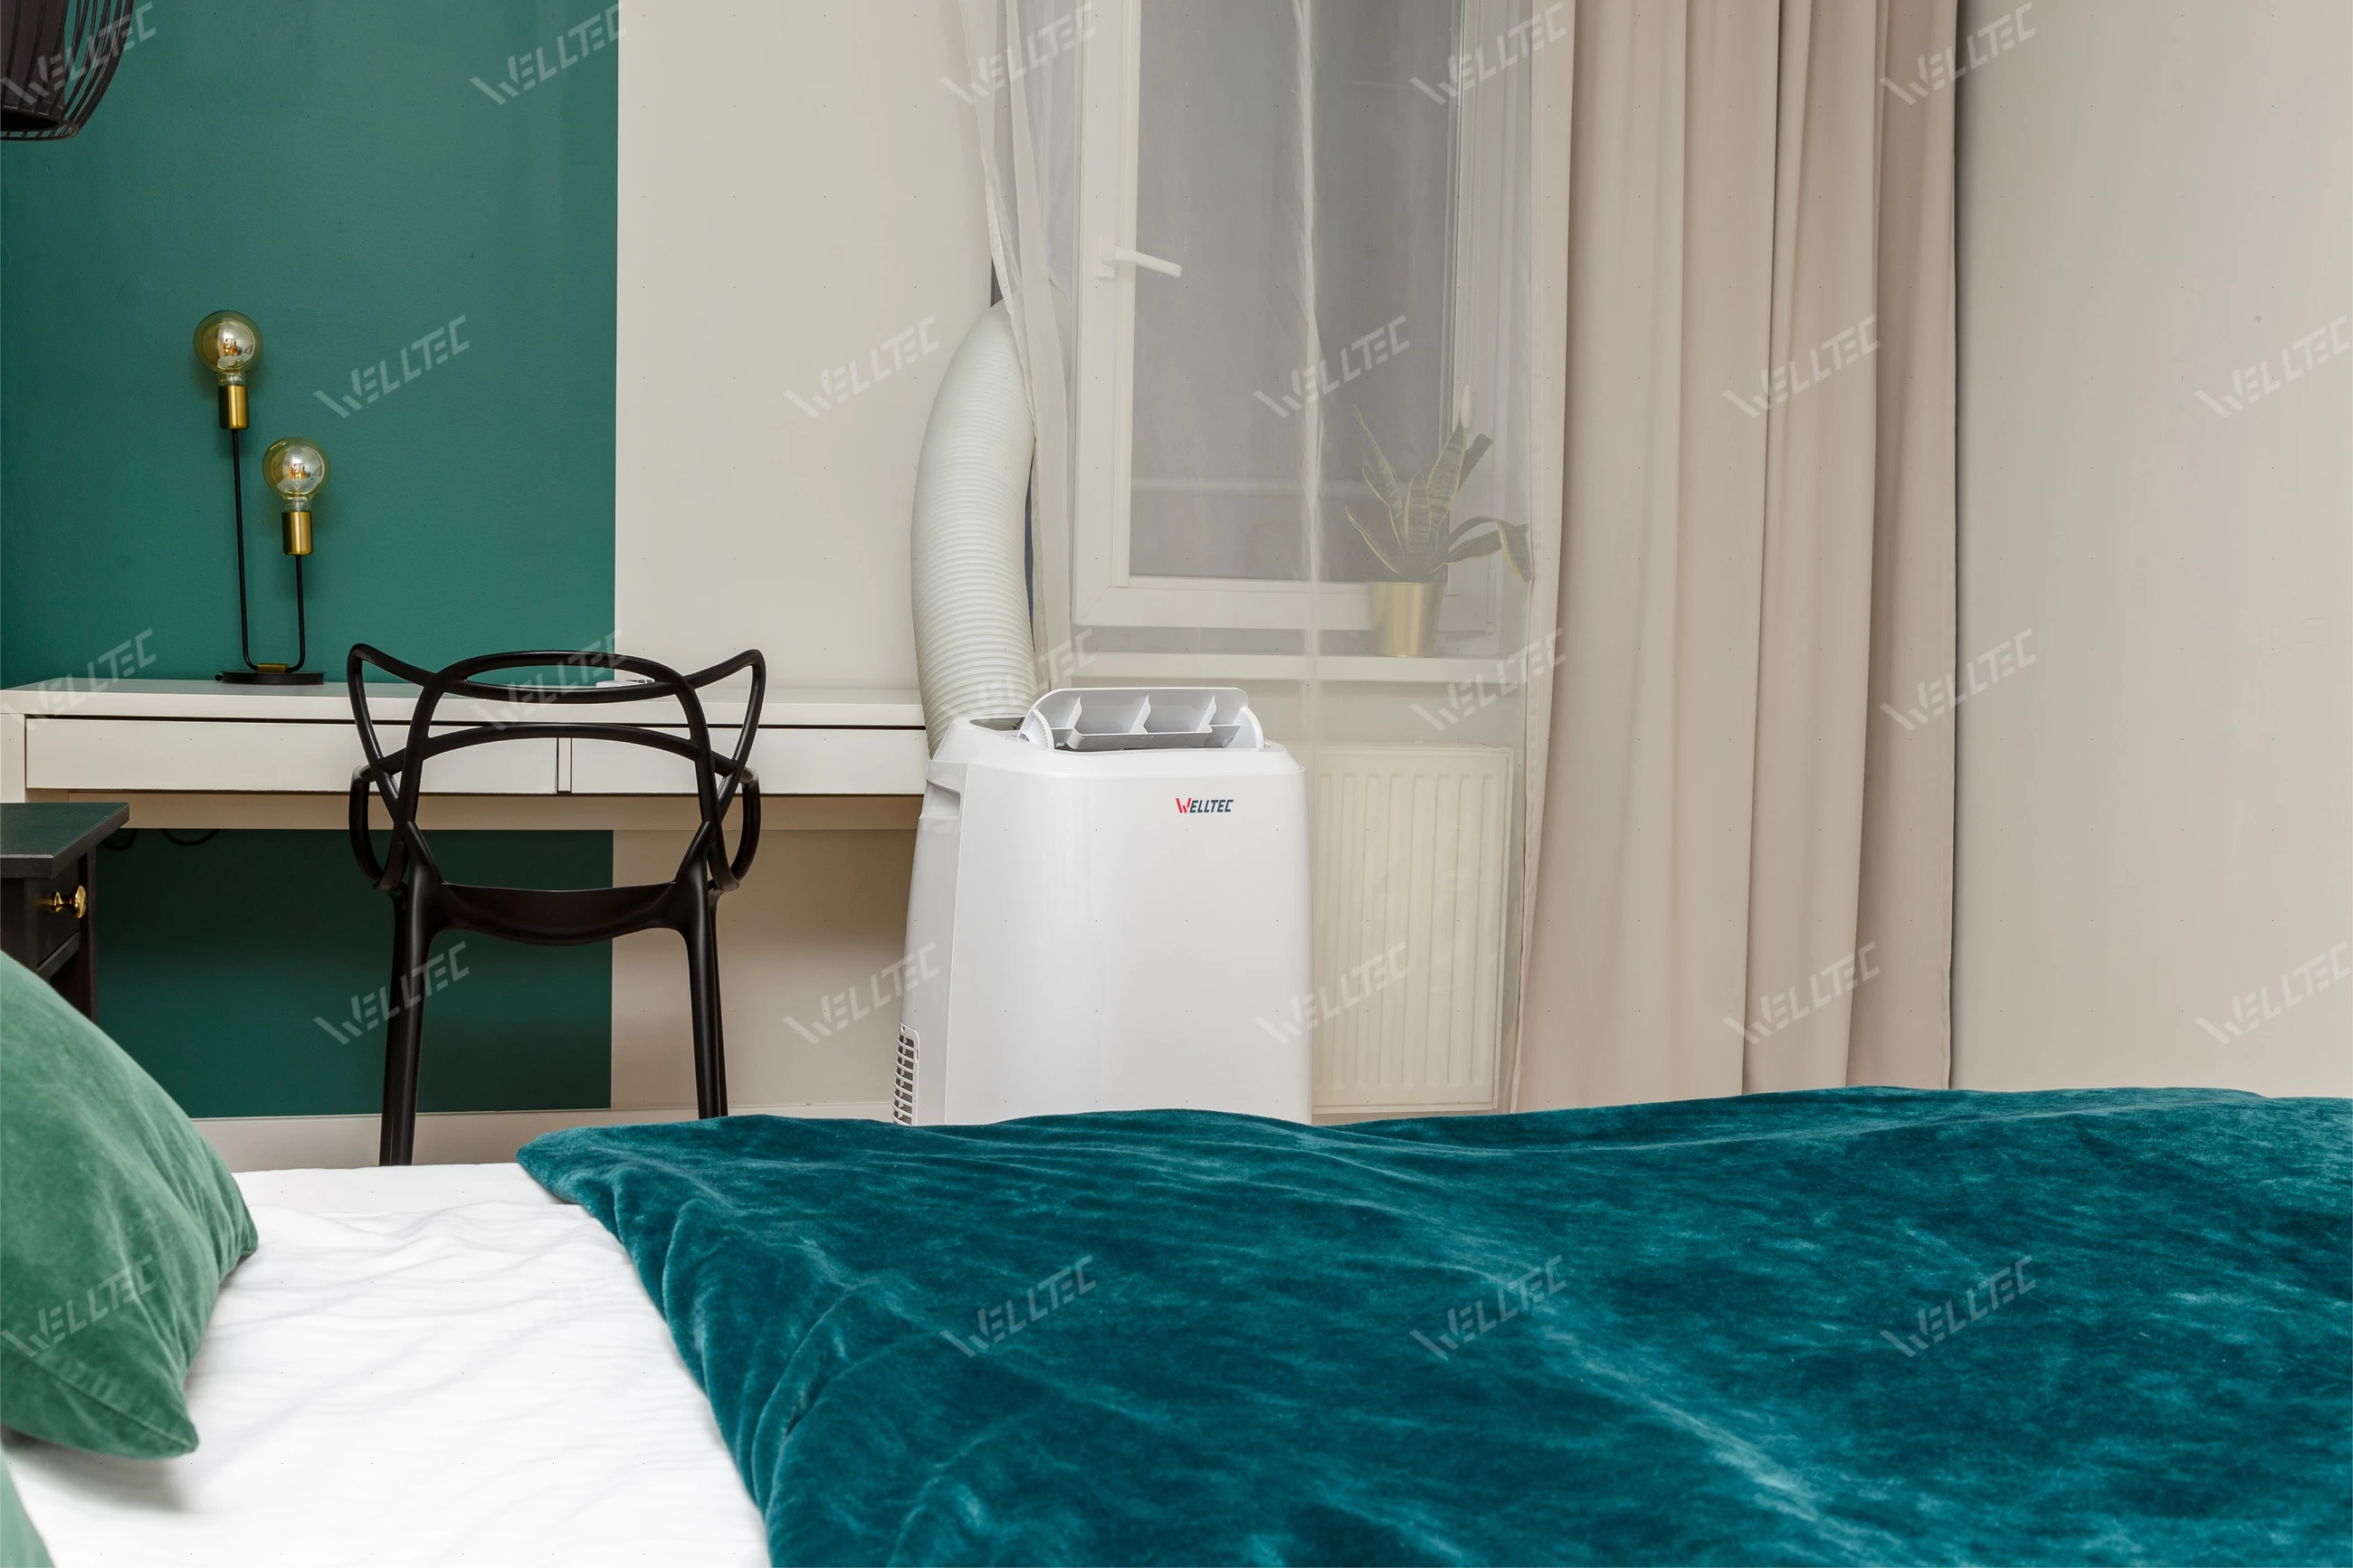 Klimatyzator przenośny Welltec ACN18 - sprawdzi się w sypialni